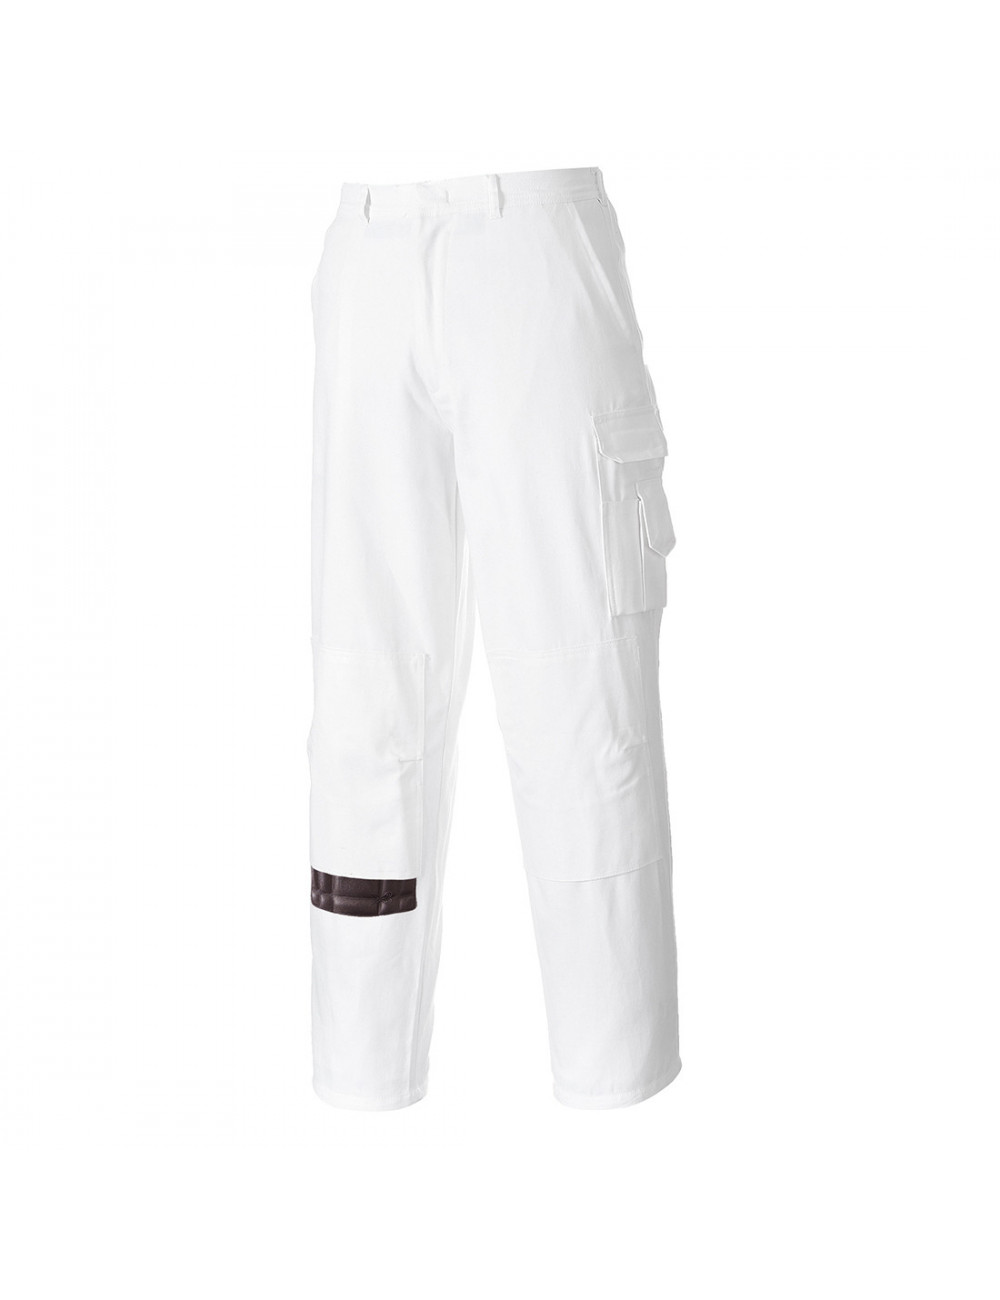 Spodnie malarskie biały tall Portwest